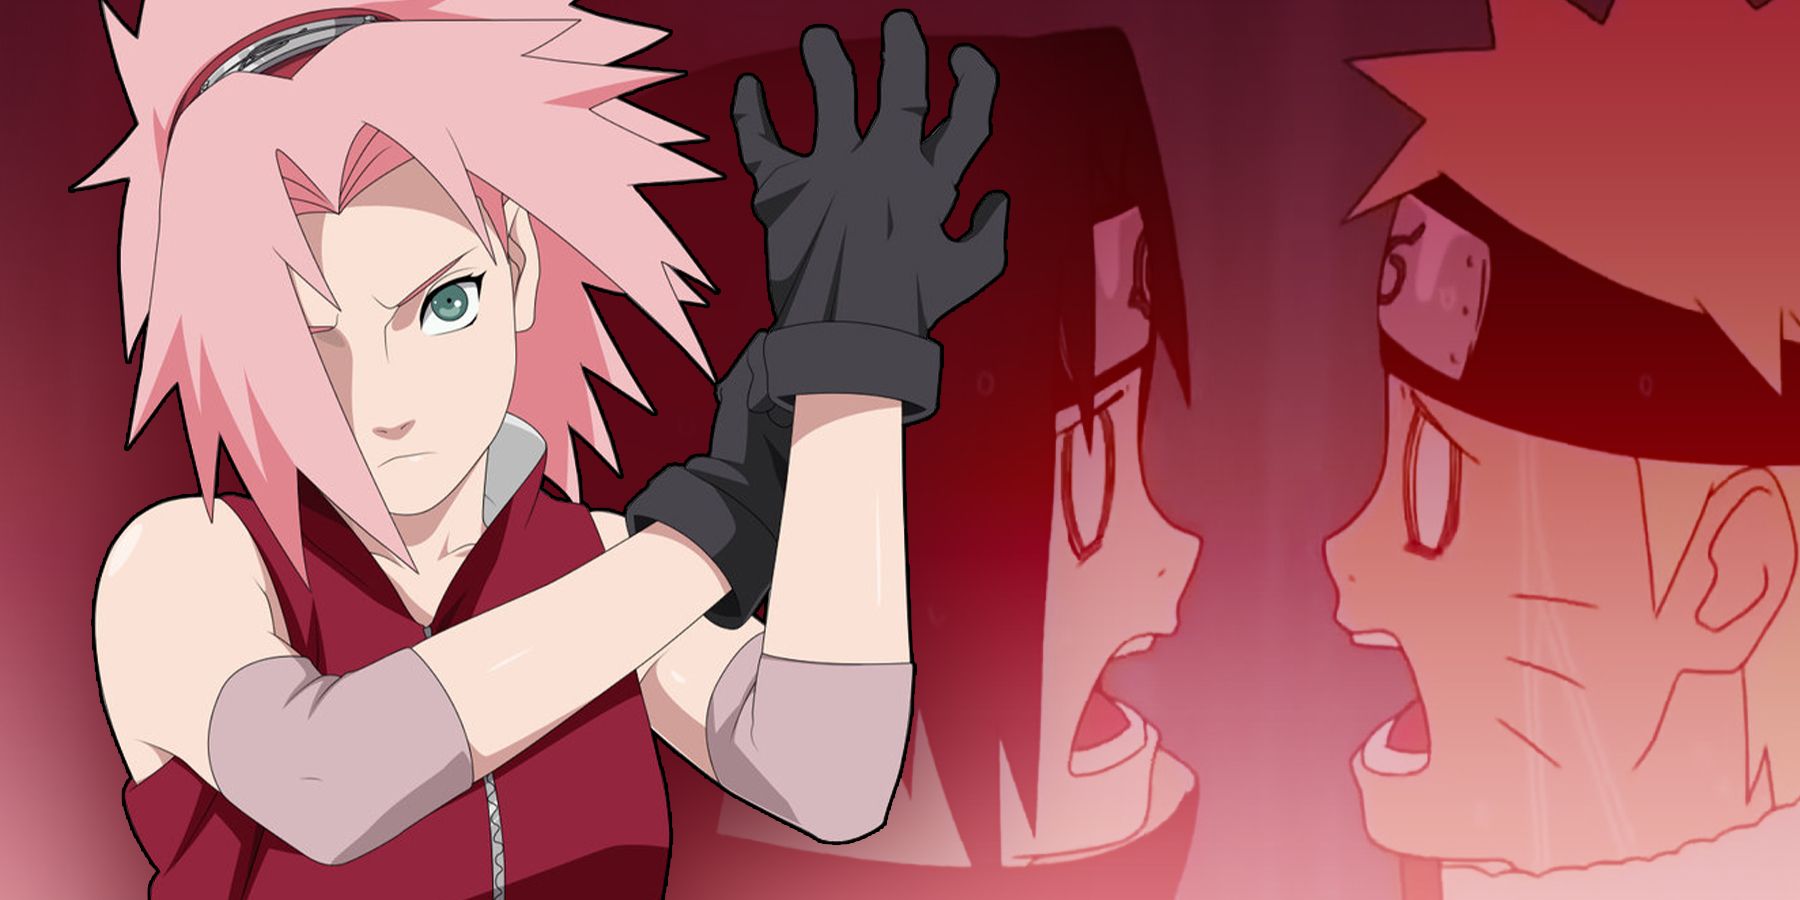 Sakura tired fr #Naruto #sasukeuchiha #SakuraHaruno #narutouzumaki #g